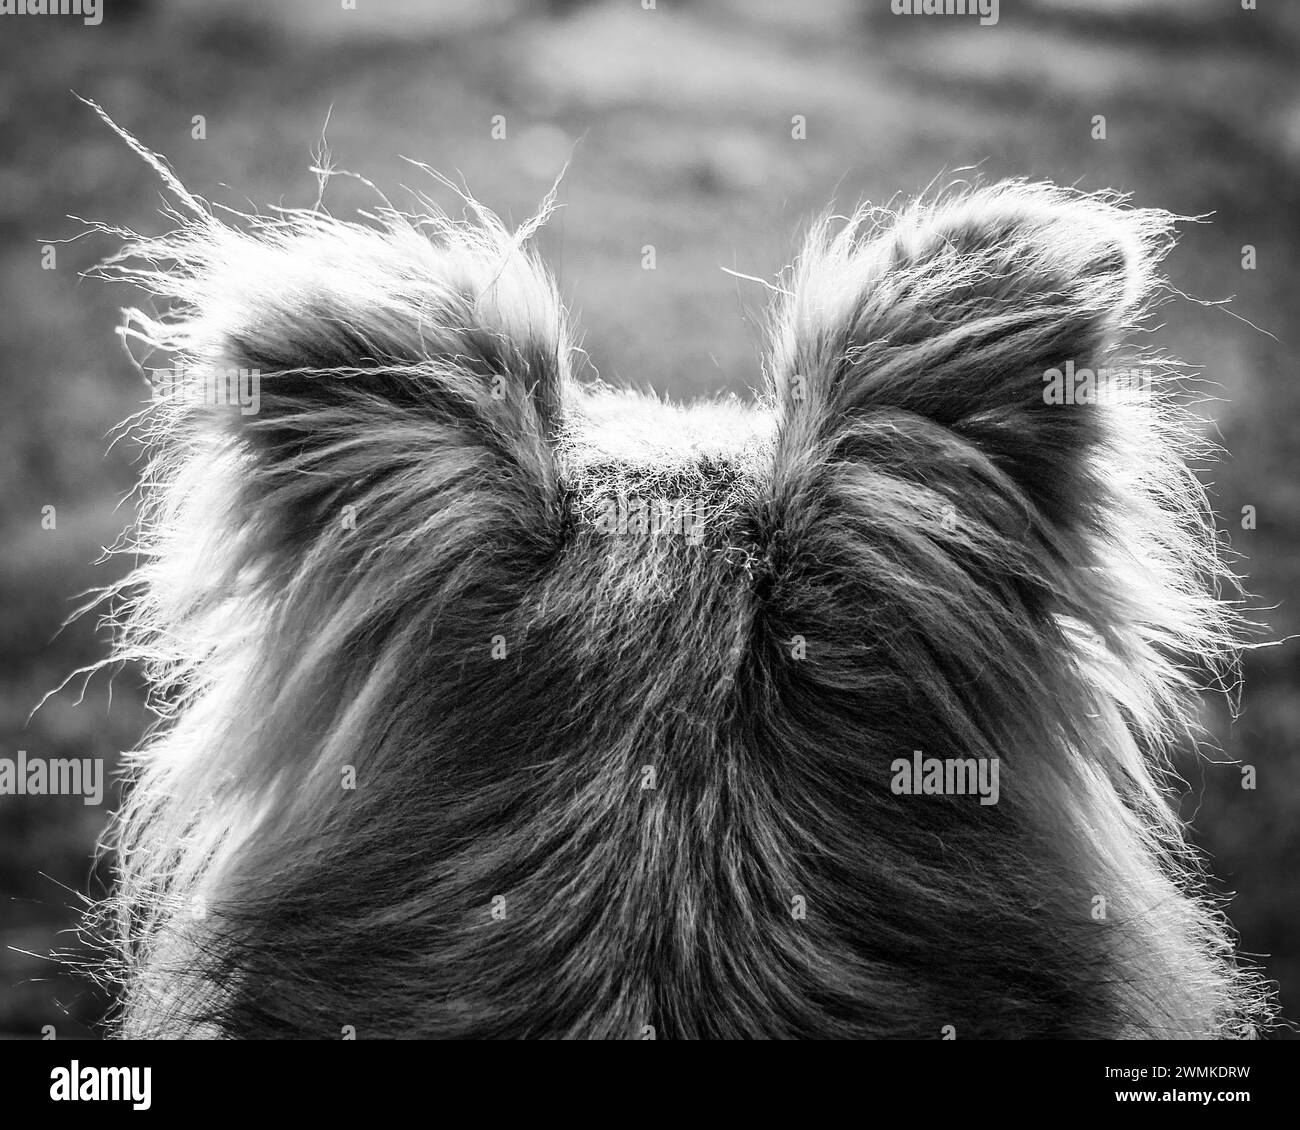 Vue rapprochée prise de derrière de la lumière du soleil haletant les poils sur la tête d'un chien de race mixte (Canis lupus familiaris) comme vu de l'arrière dans ce bla... Banque D'Images